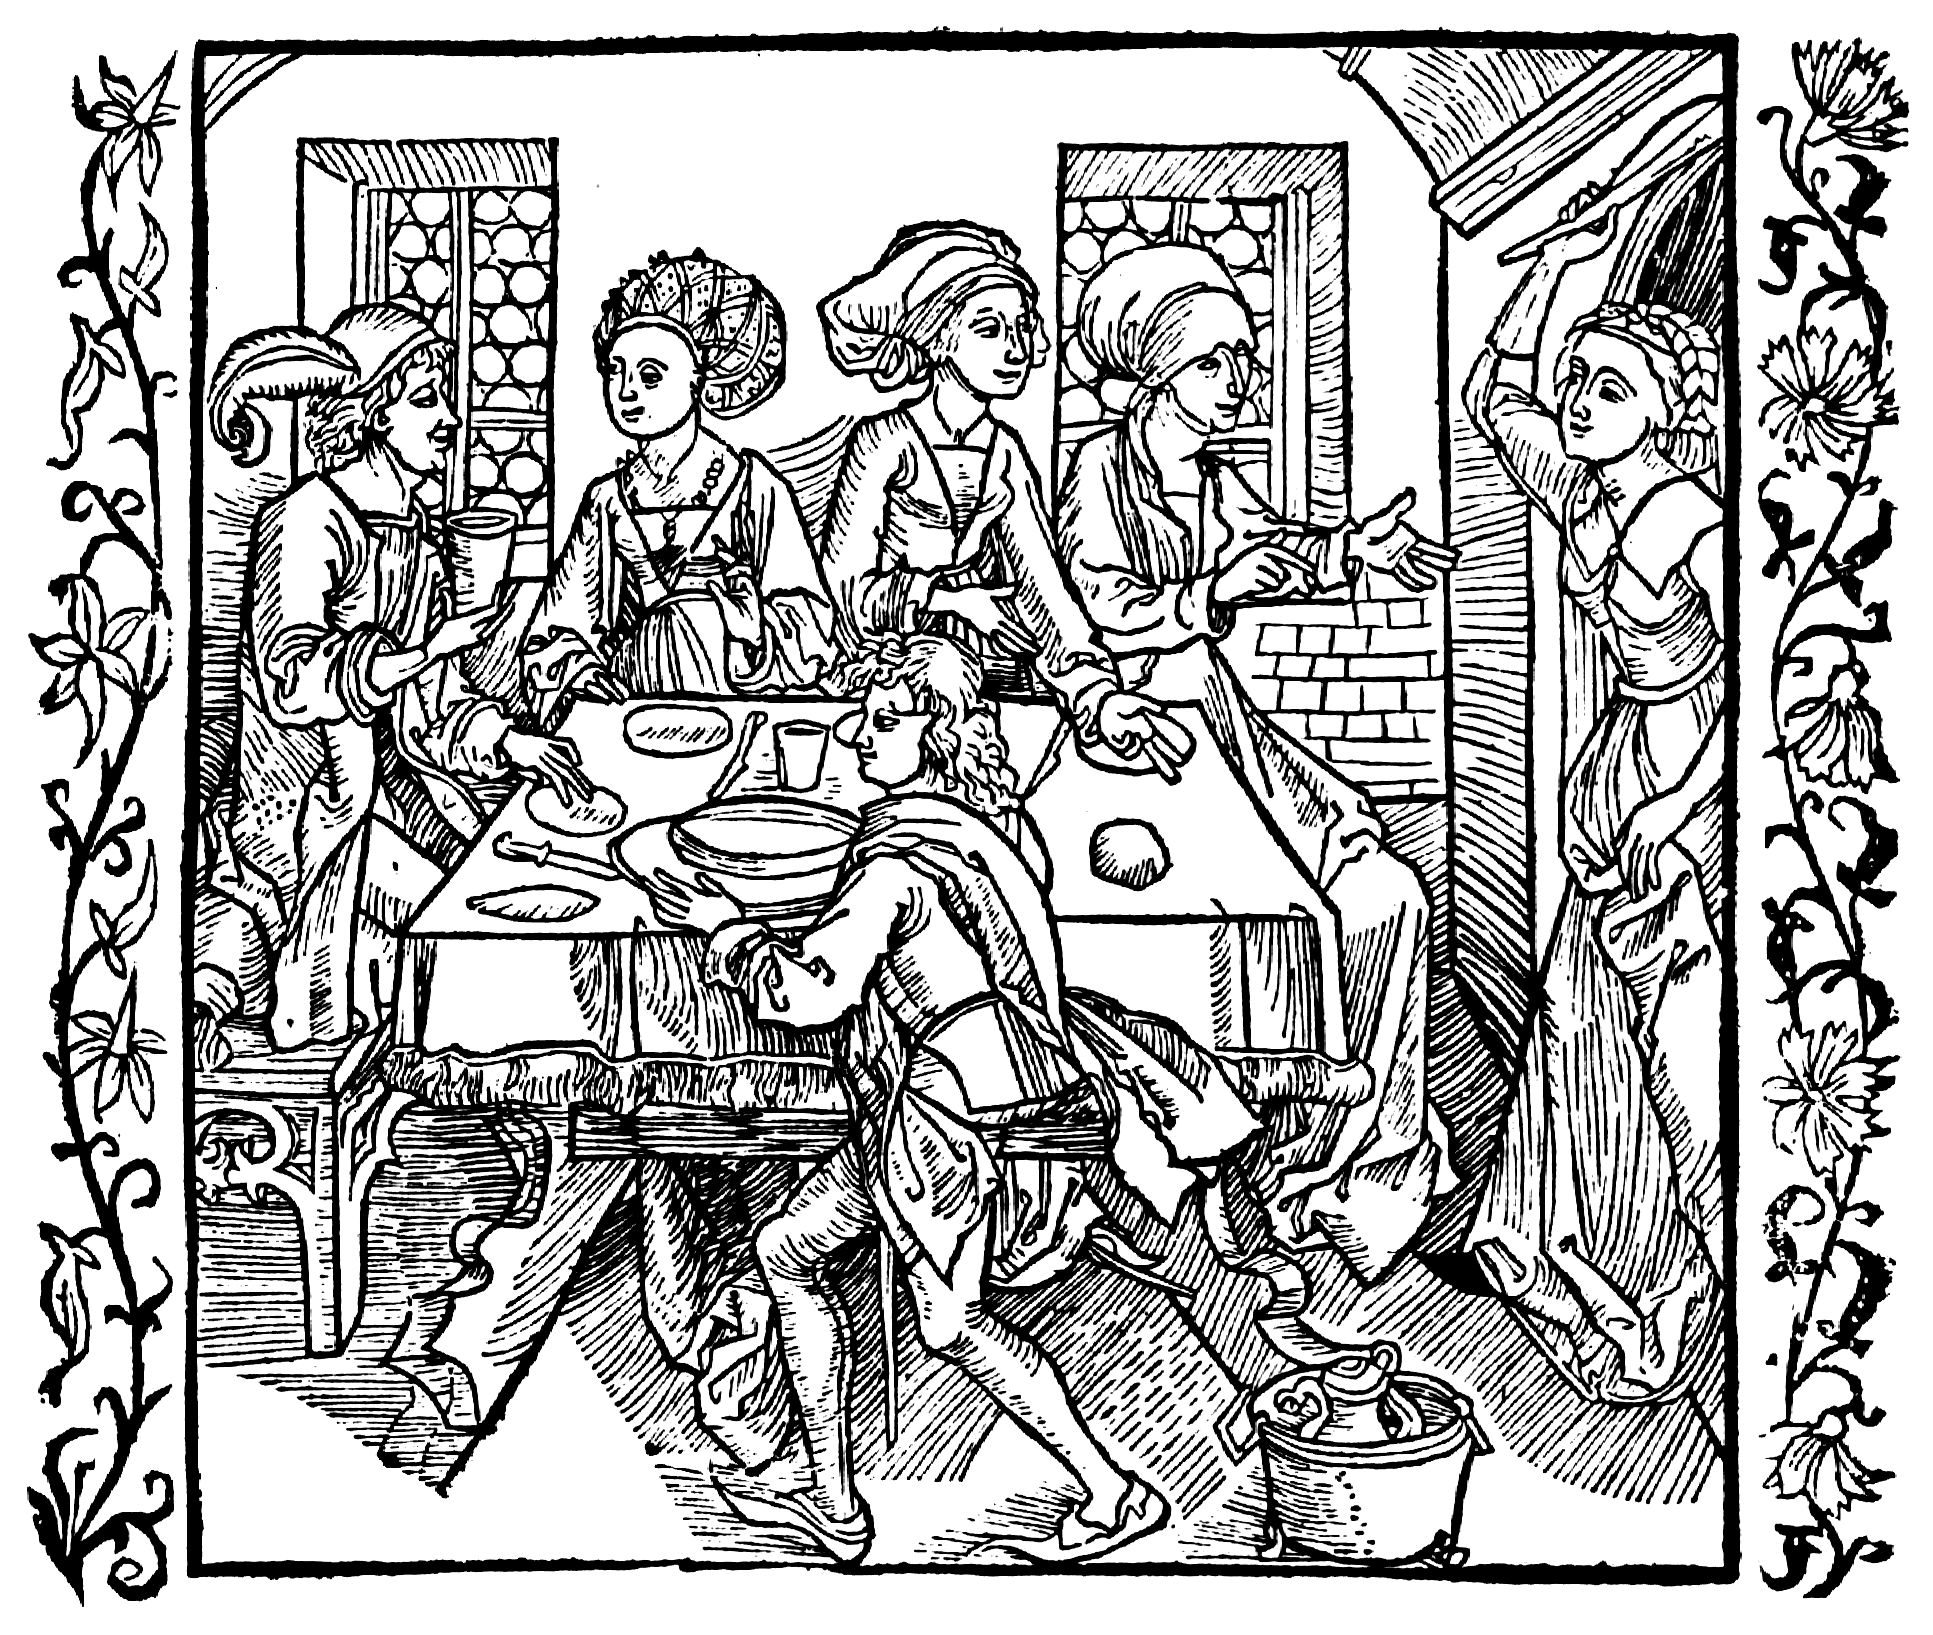 Иллюстрации 14 века. Ксилография миниатюра 16 век. Гравюры 14-15 века. Ксилография 15 век. Ксилография 15 века Германия.